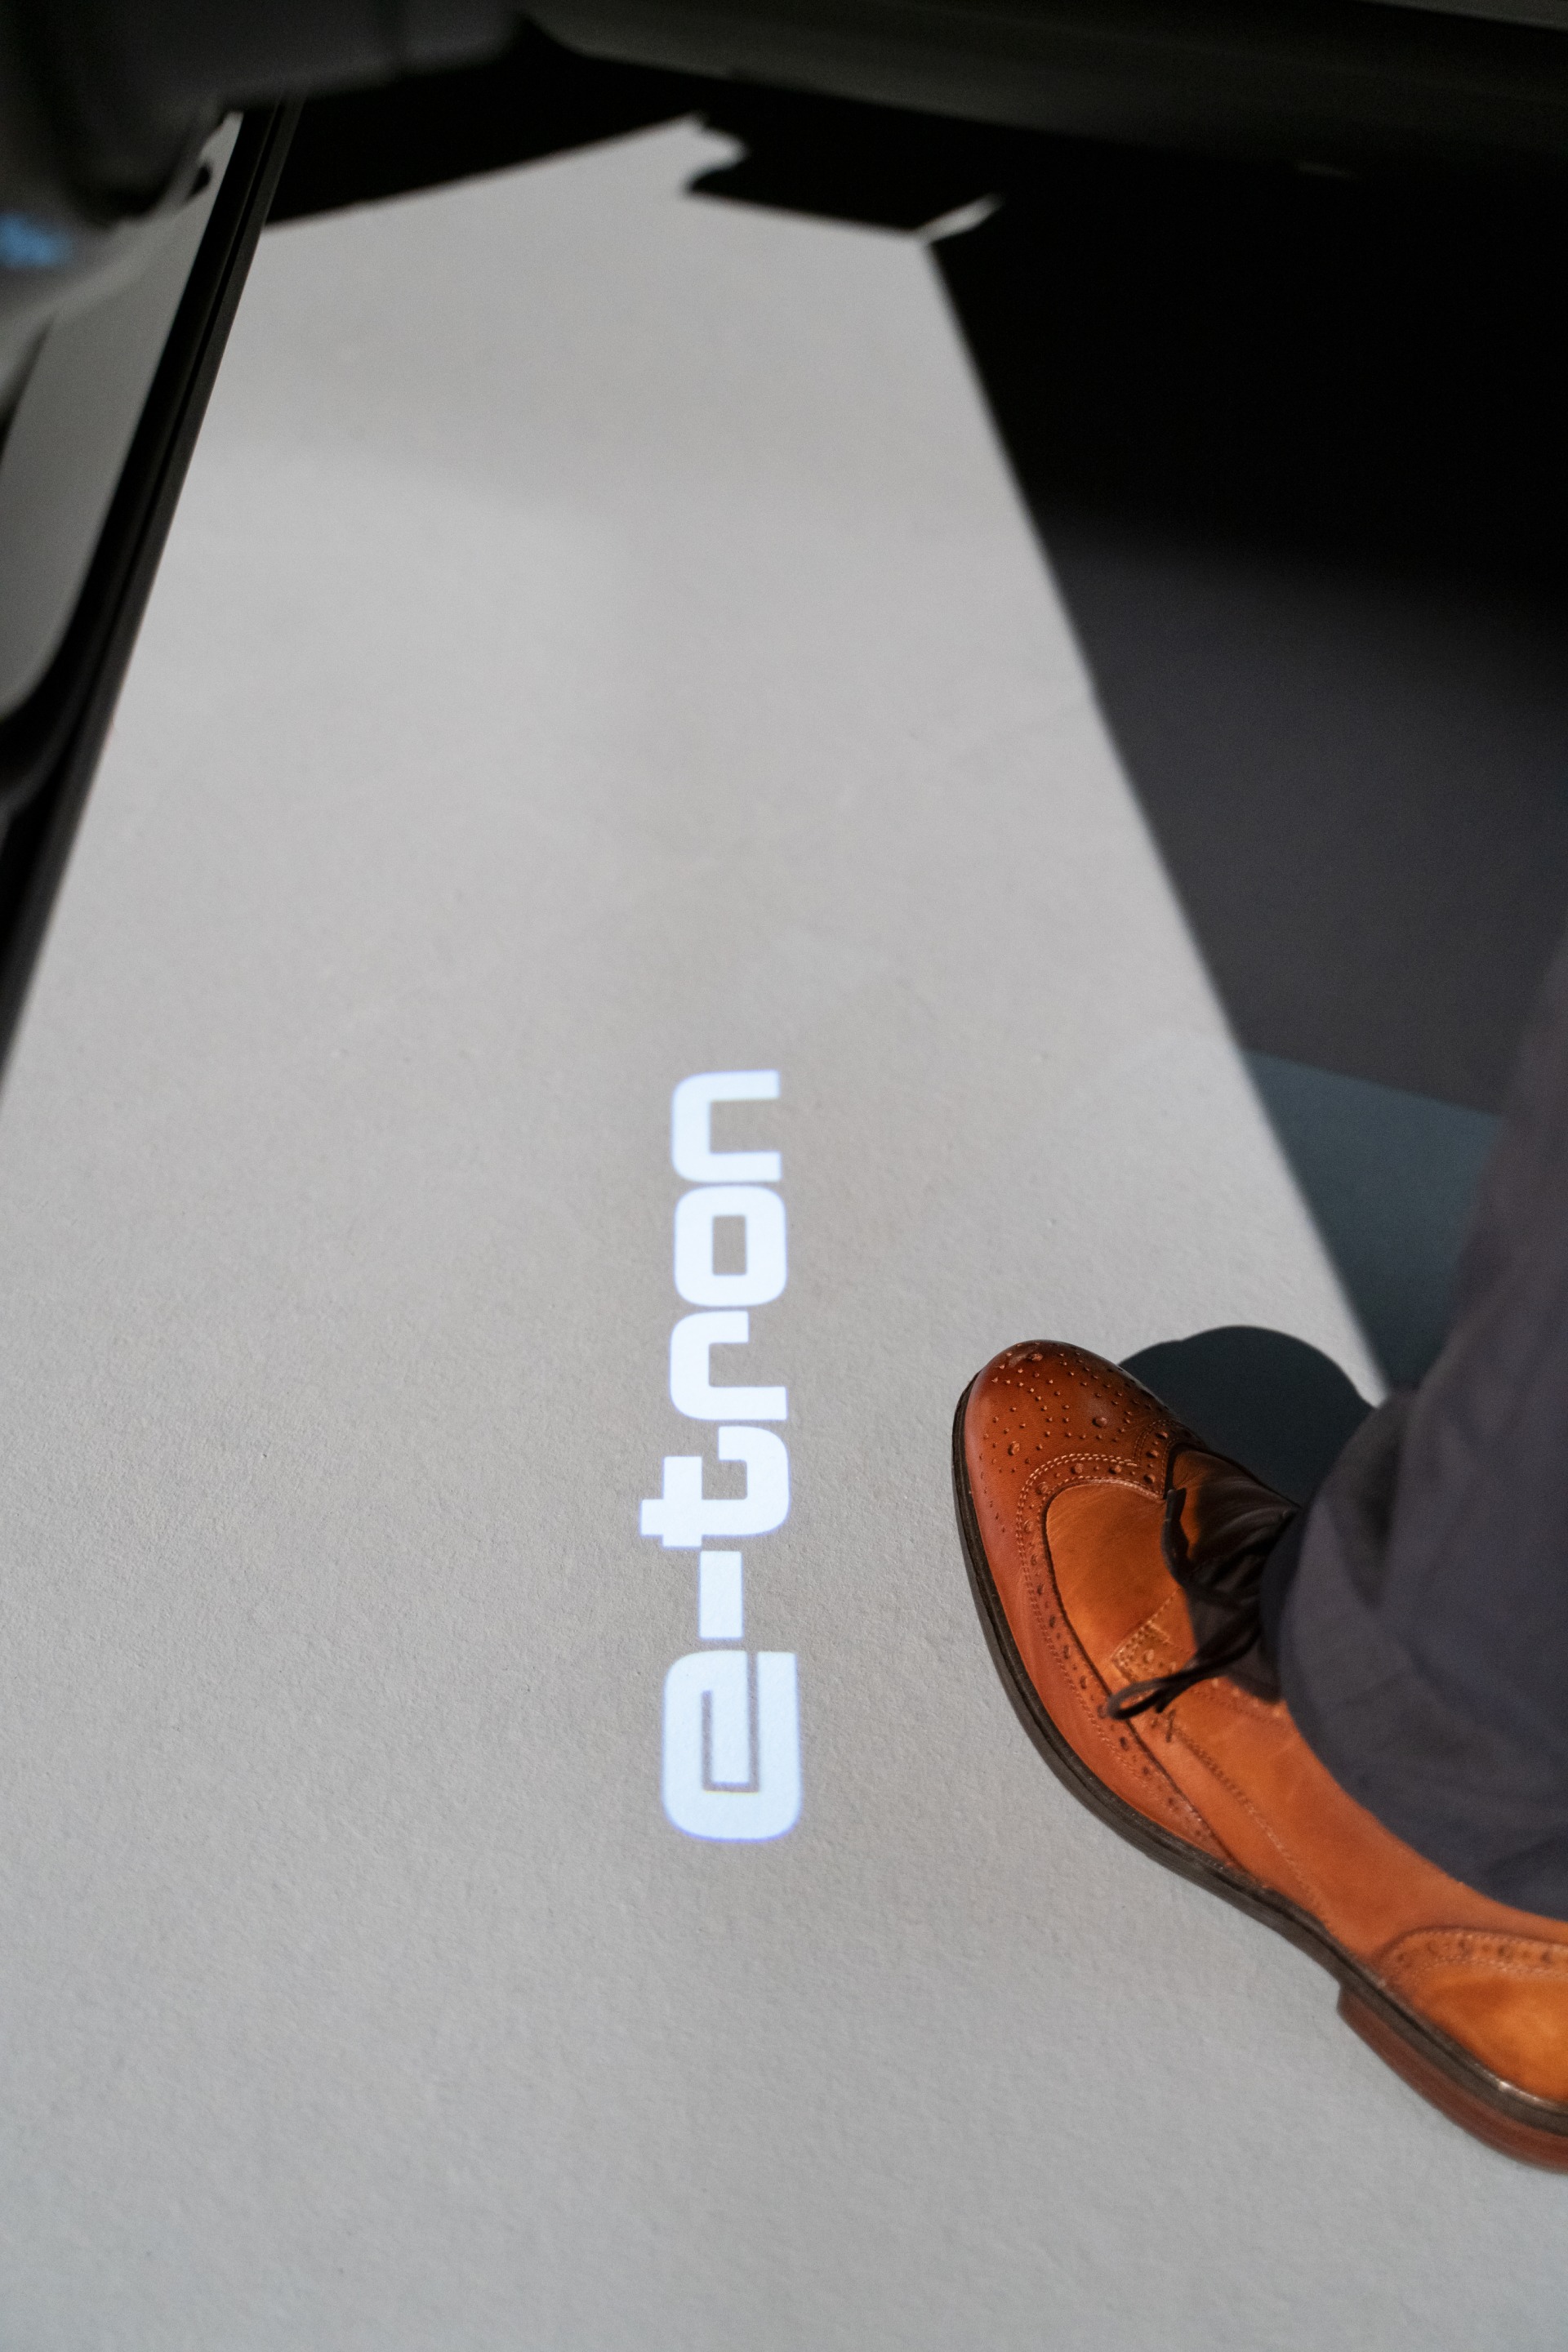 Logo e-tron jest wyświetlane na ziemi pod drzwiami kierowcy.